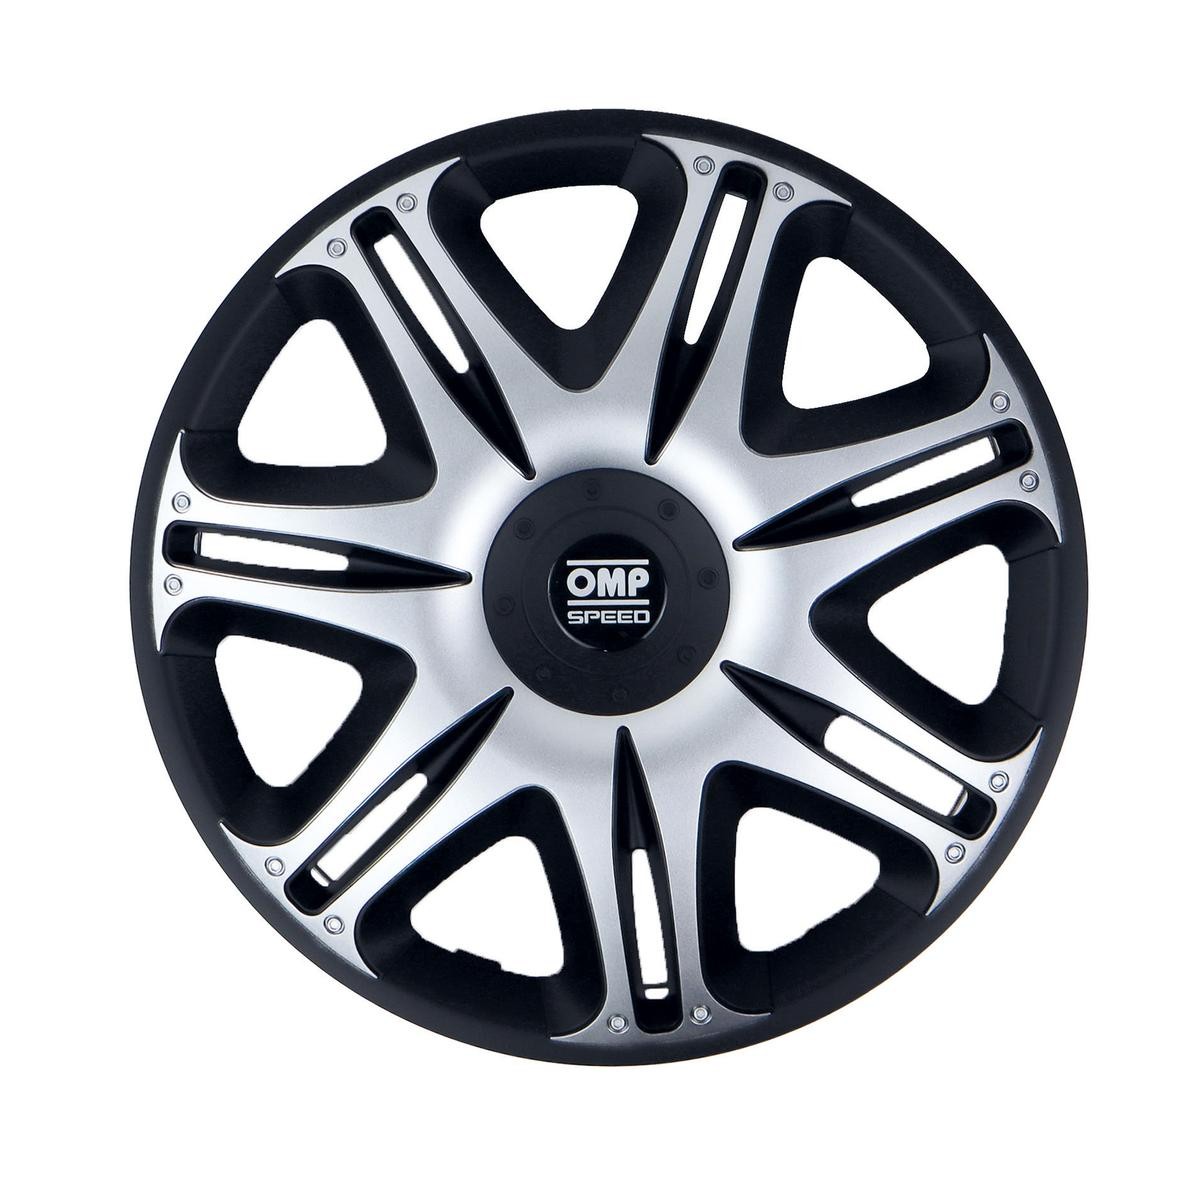 OMP OMPS07031412 Car wheel trims VW Golf 5 (1K1) 14 Inch black, silver